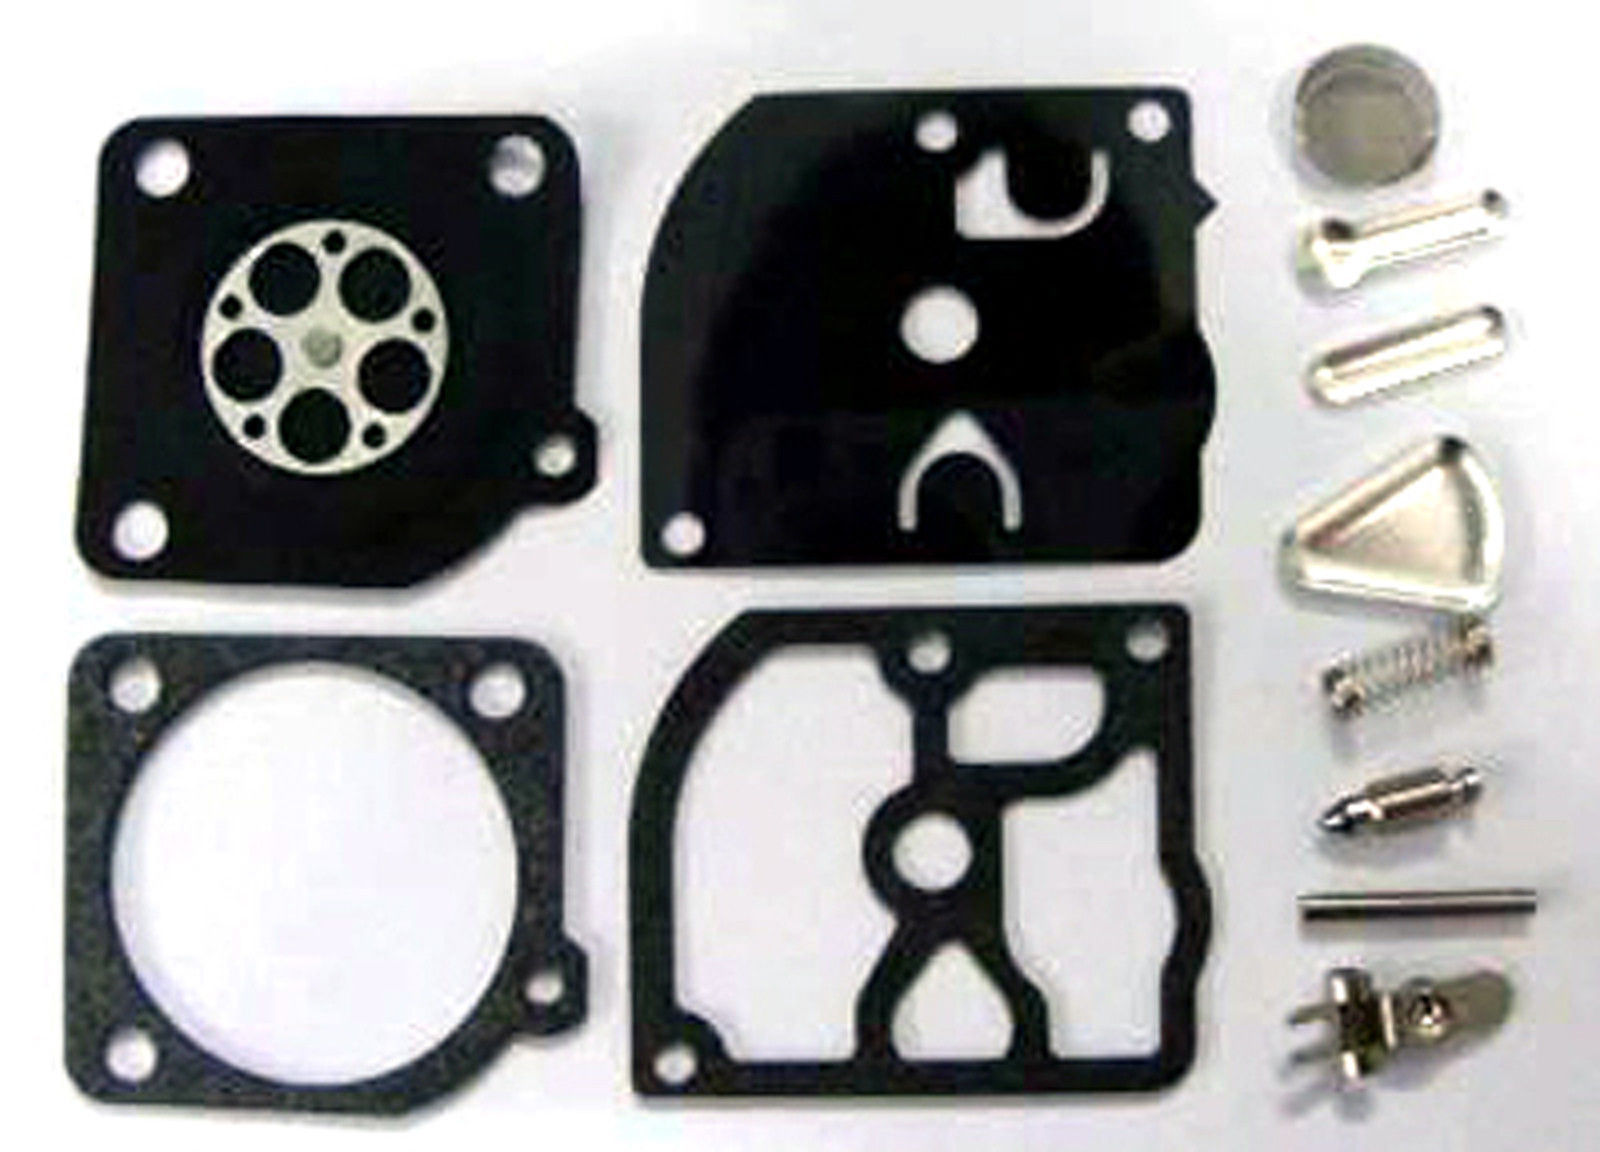 Primary image for Carburetor Rebuild Kit Zama RB-72 fits C1Q-DM1, C1Q-DM6, C1Q-DM6A Stihl 019